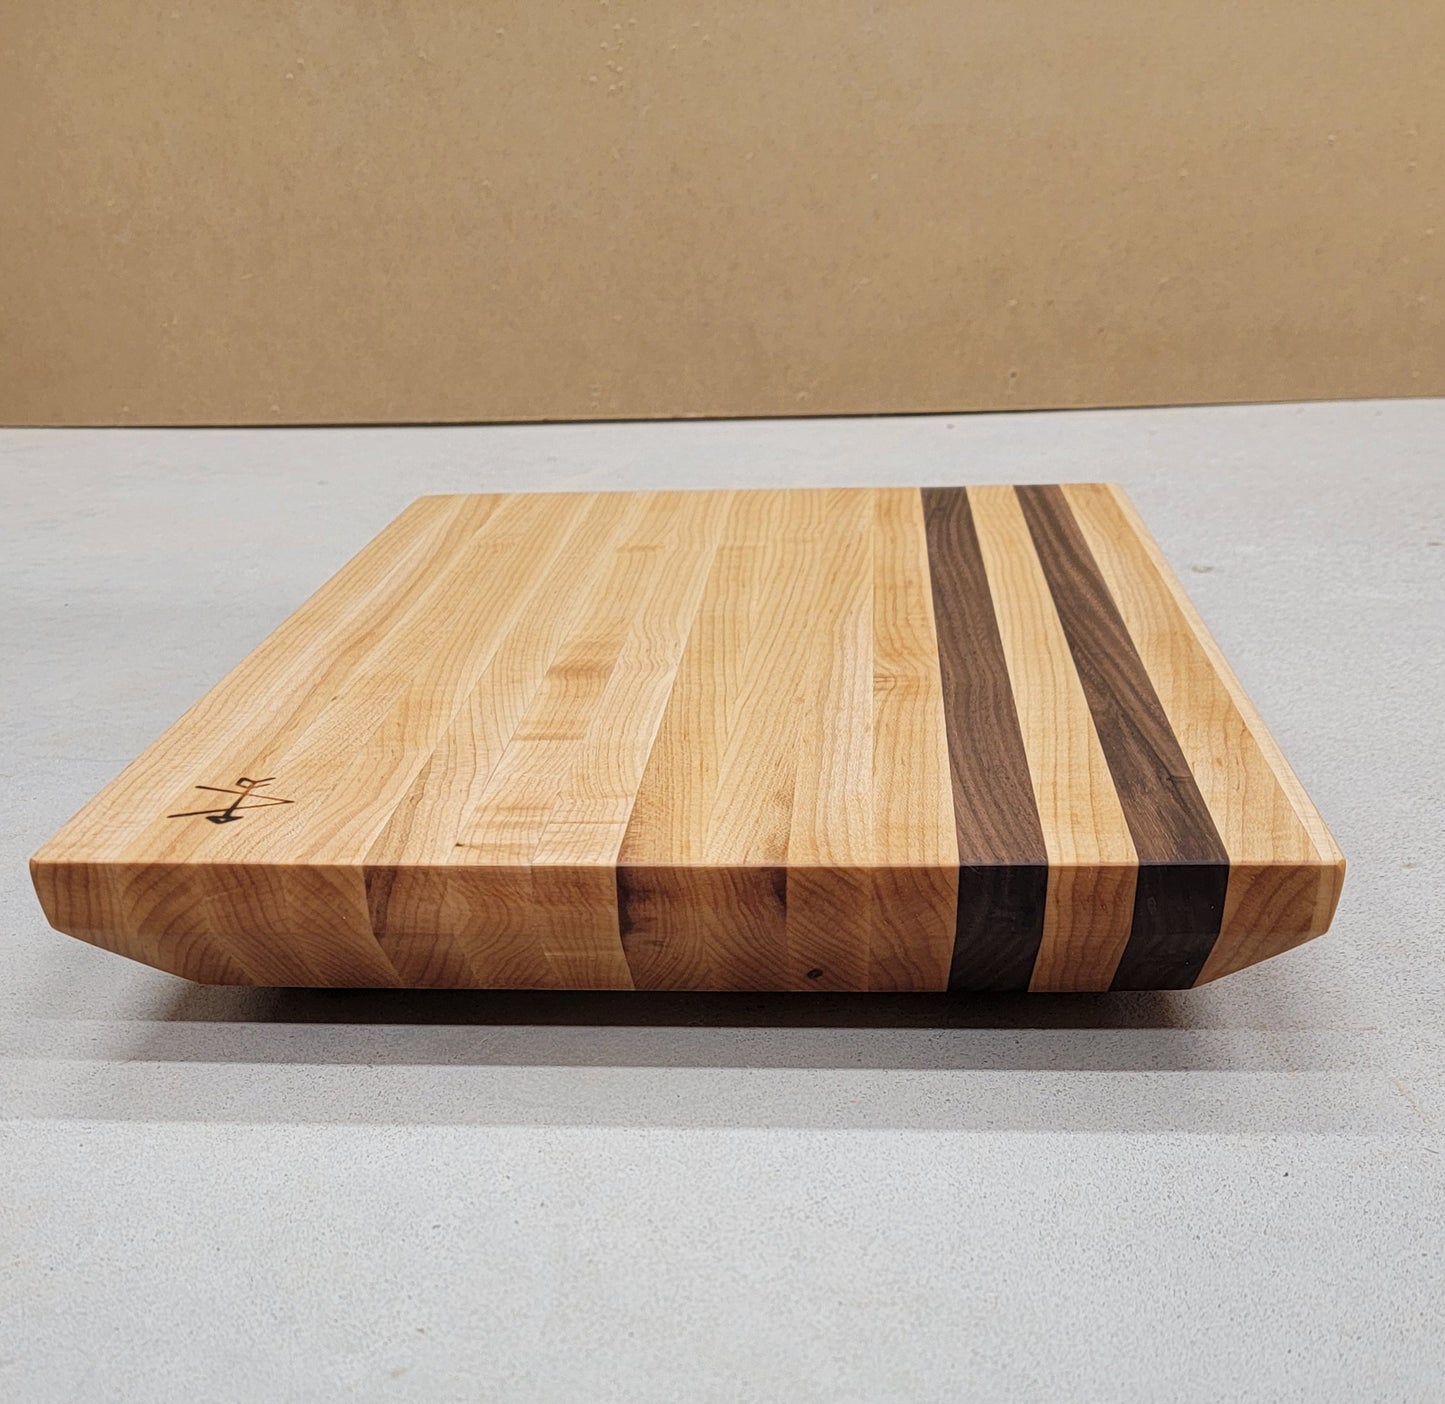 Maple and Walnut Wood Cutting Board